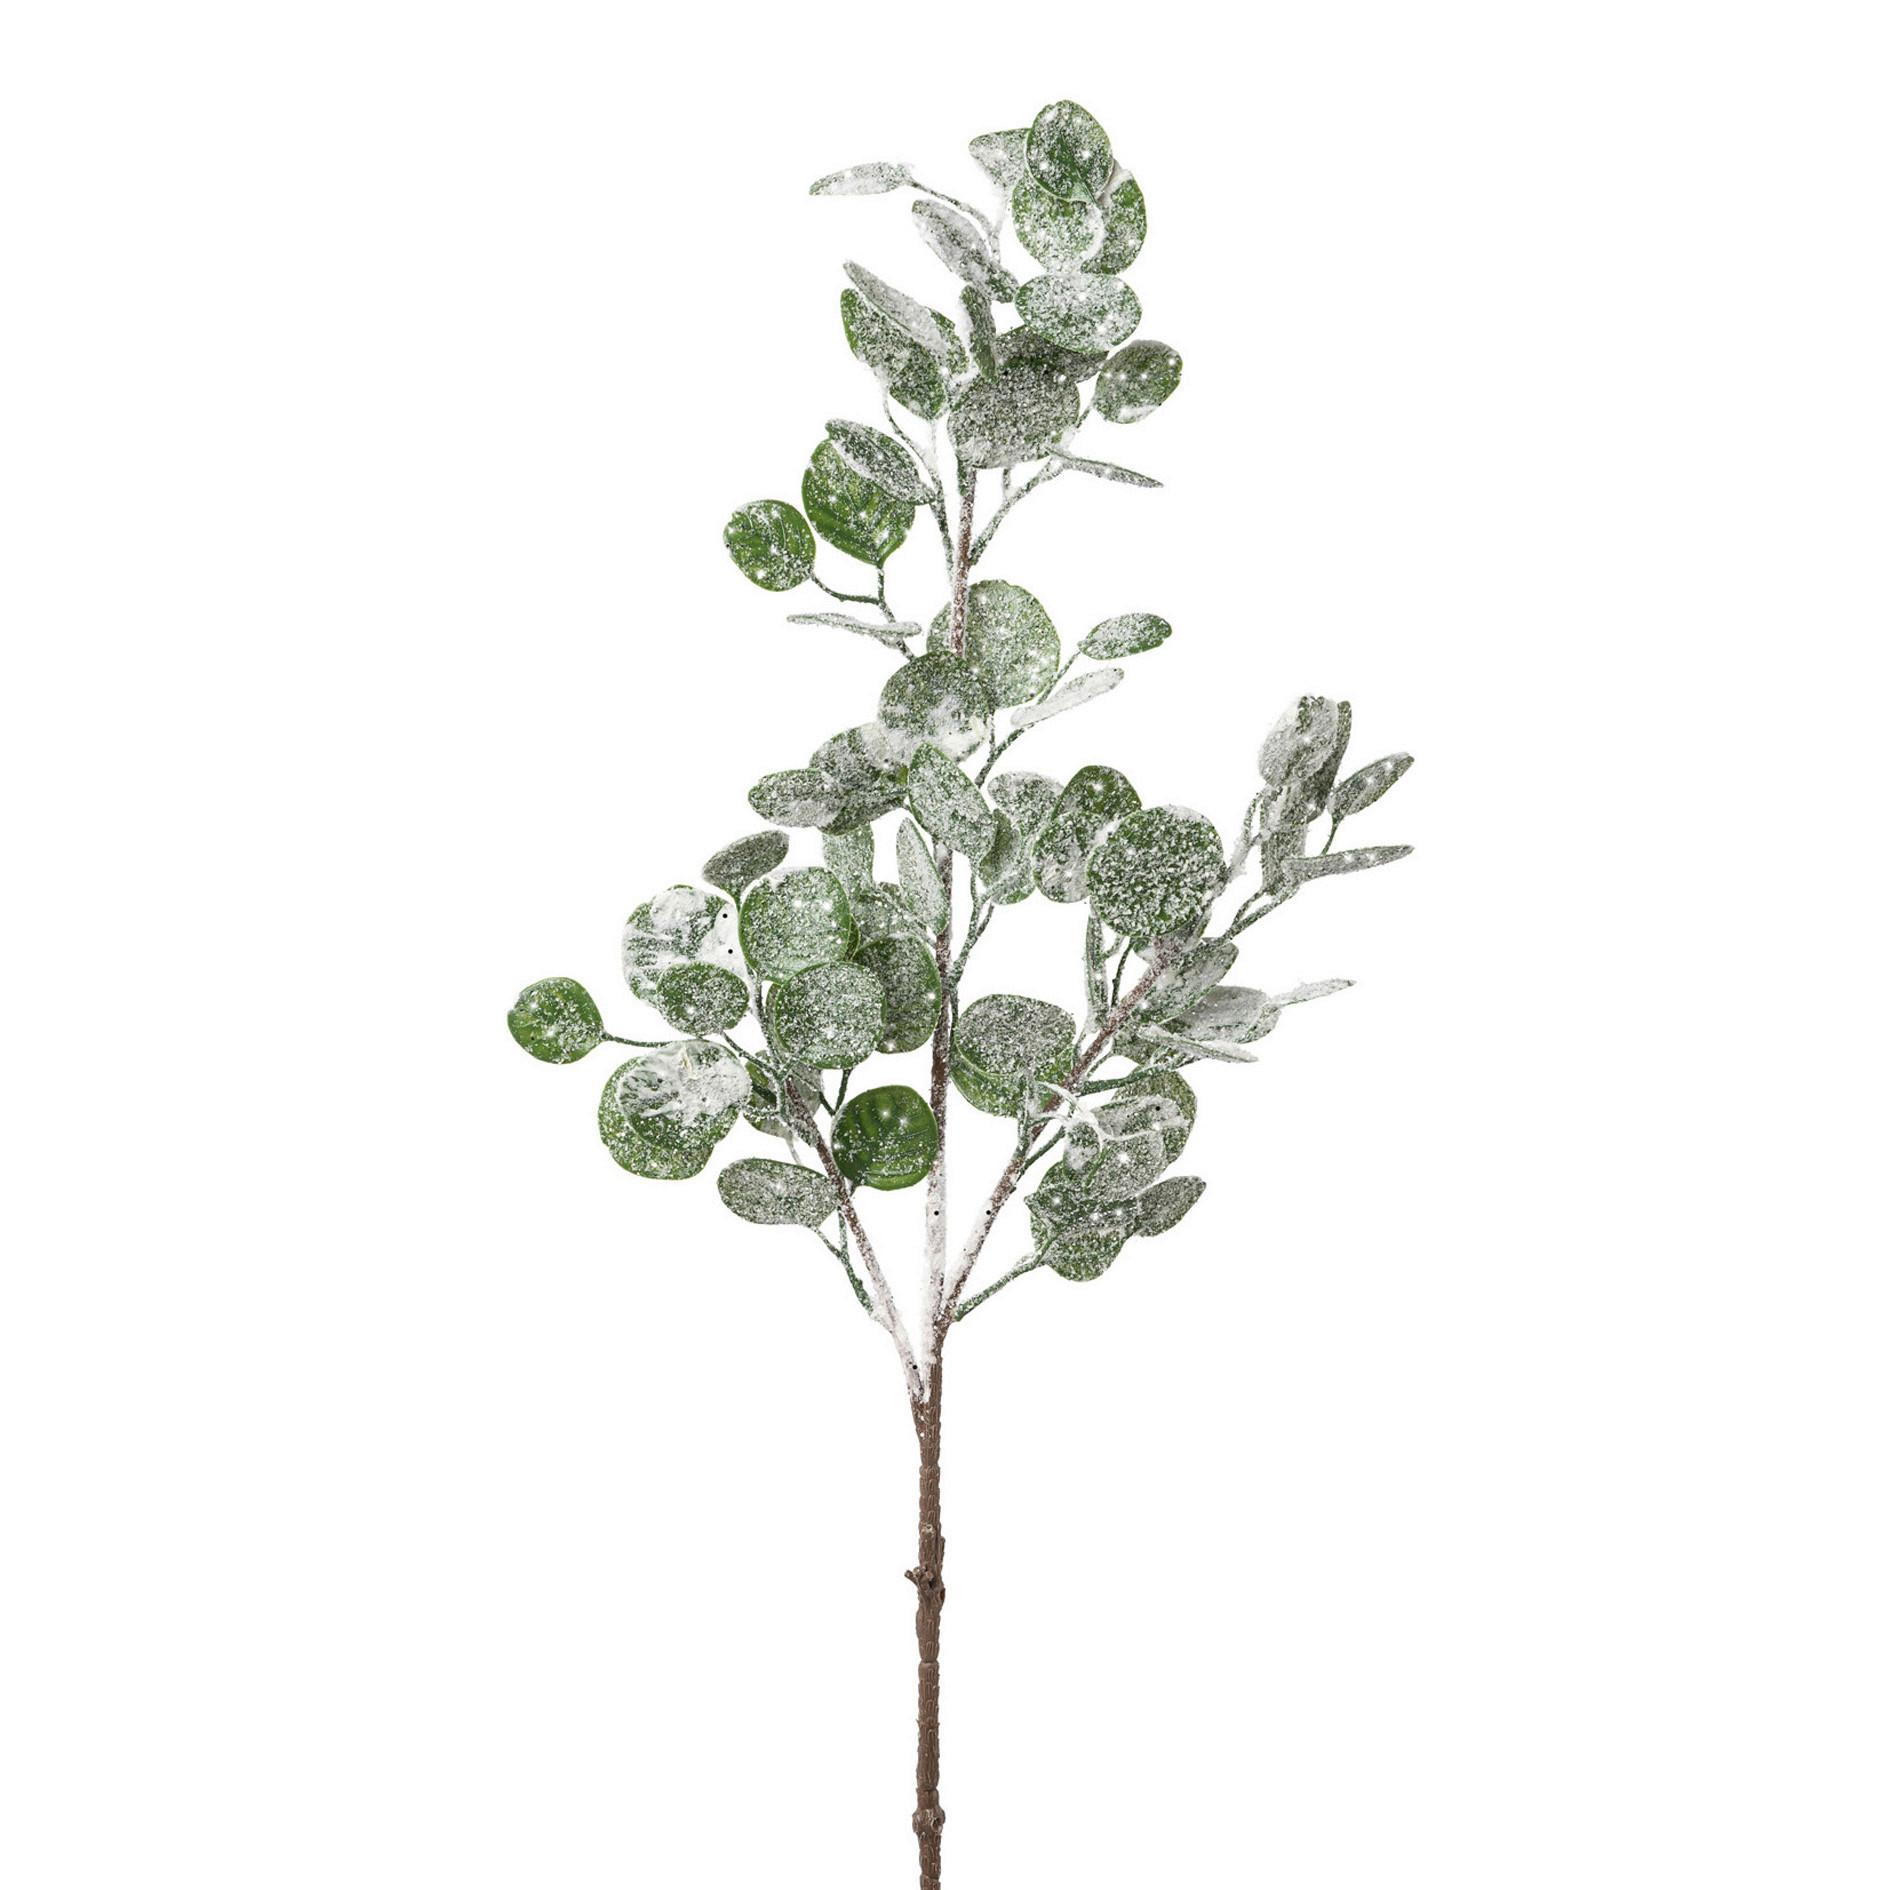 Kunstpflanze Dekozweig in Grün ca. 84cm - Grün, MODERN, Kunststoff (84cm) - Modern Living